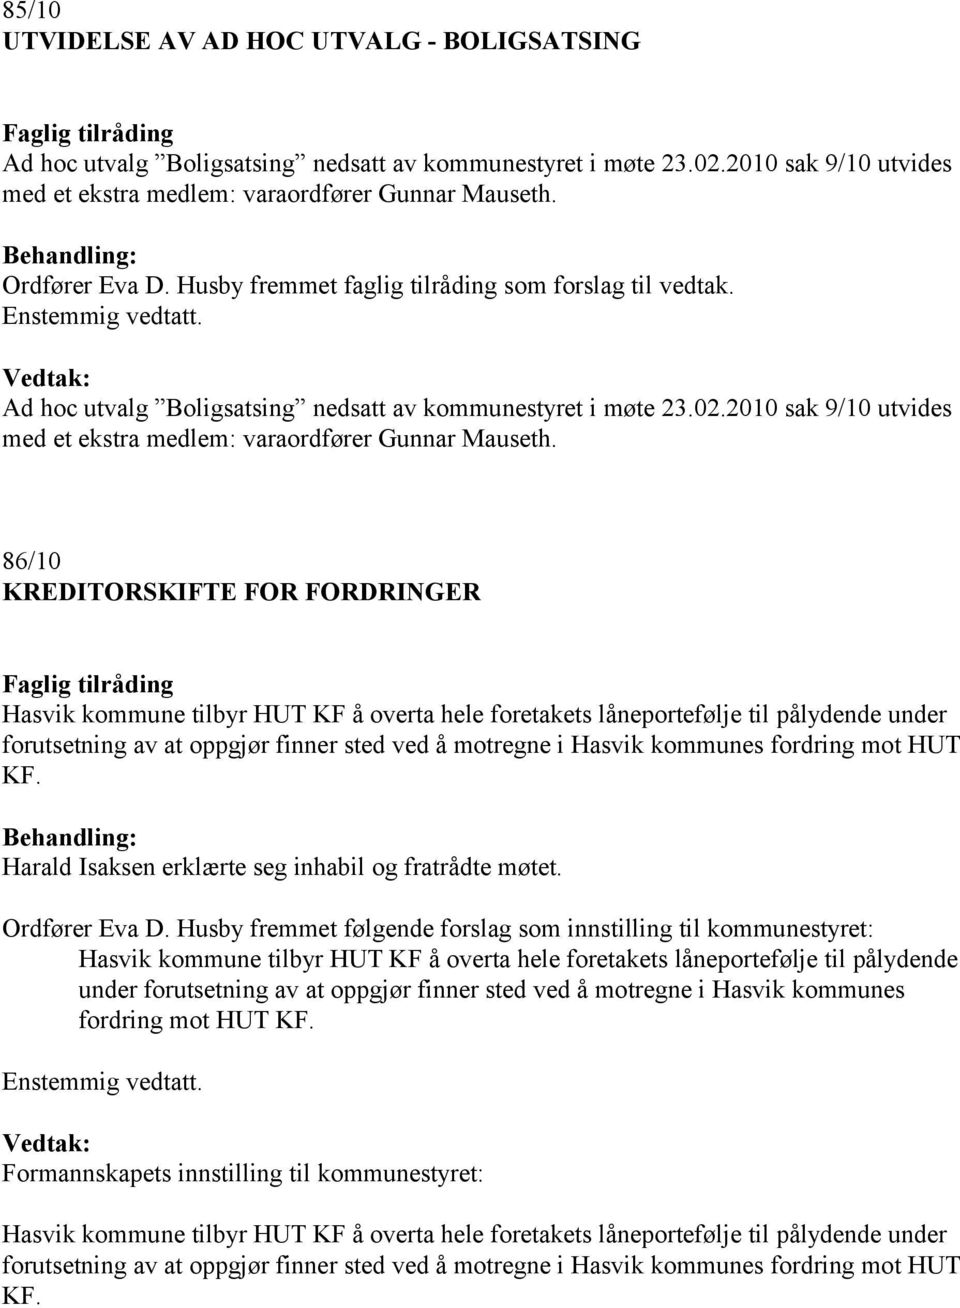 86/10 KREDITORSKIFTE FOR FORDRINGER Hasvik kommune tilbyr HUT KF å overta hele foretakets låneportefølje til pålydende under forutsetning av at oppgjør finner sted ved å motregne i Hasvik kommunes